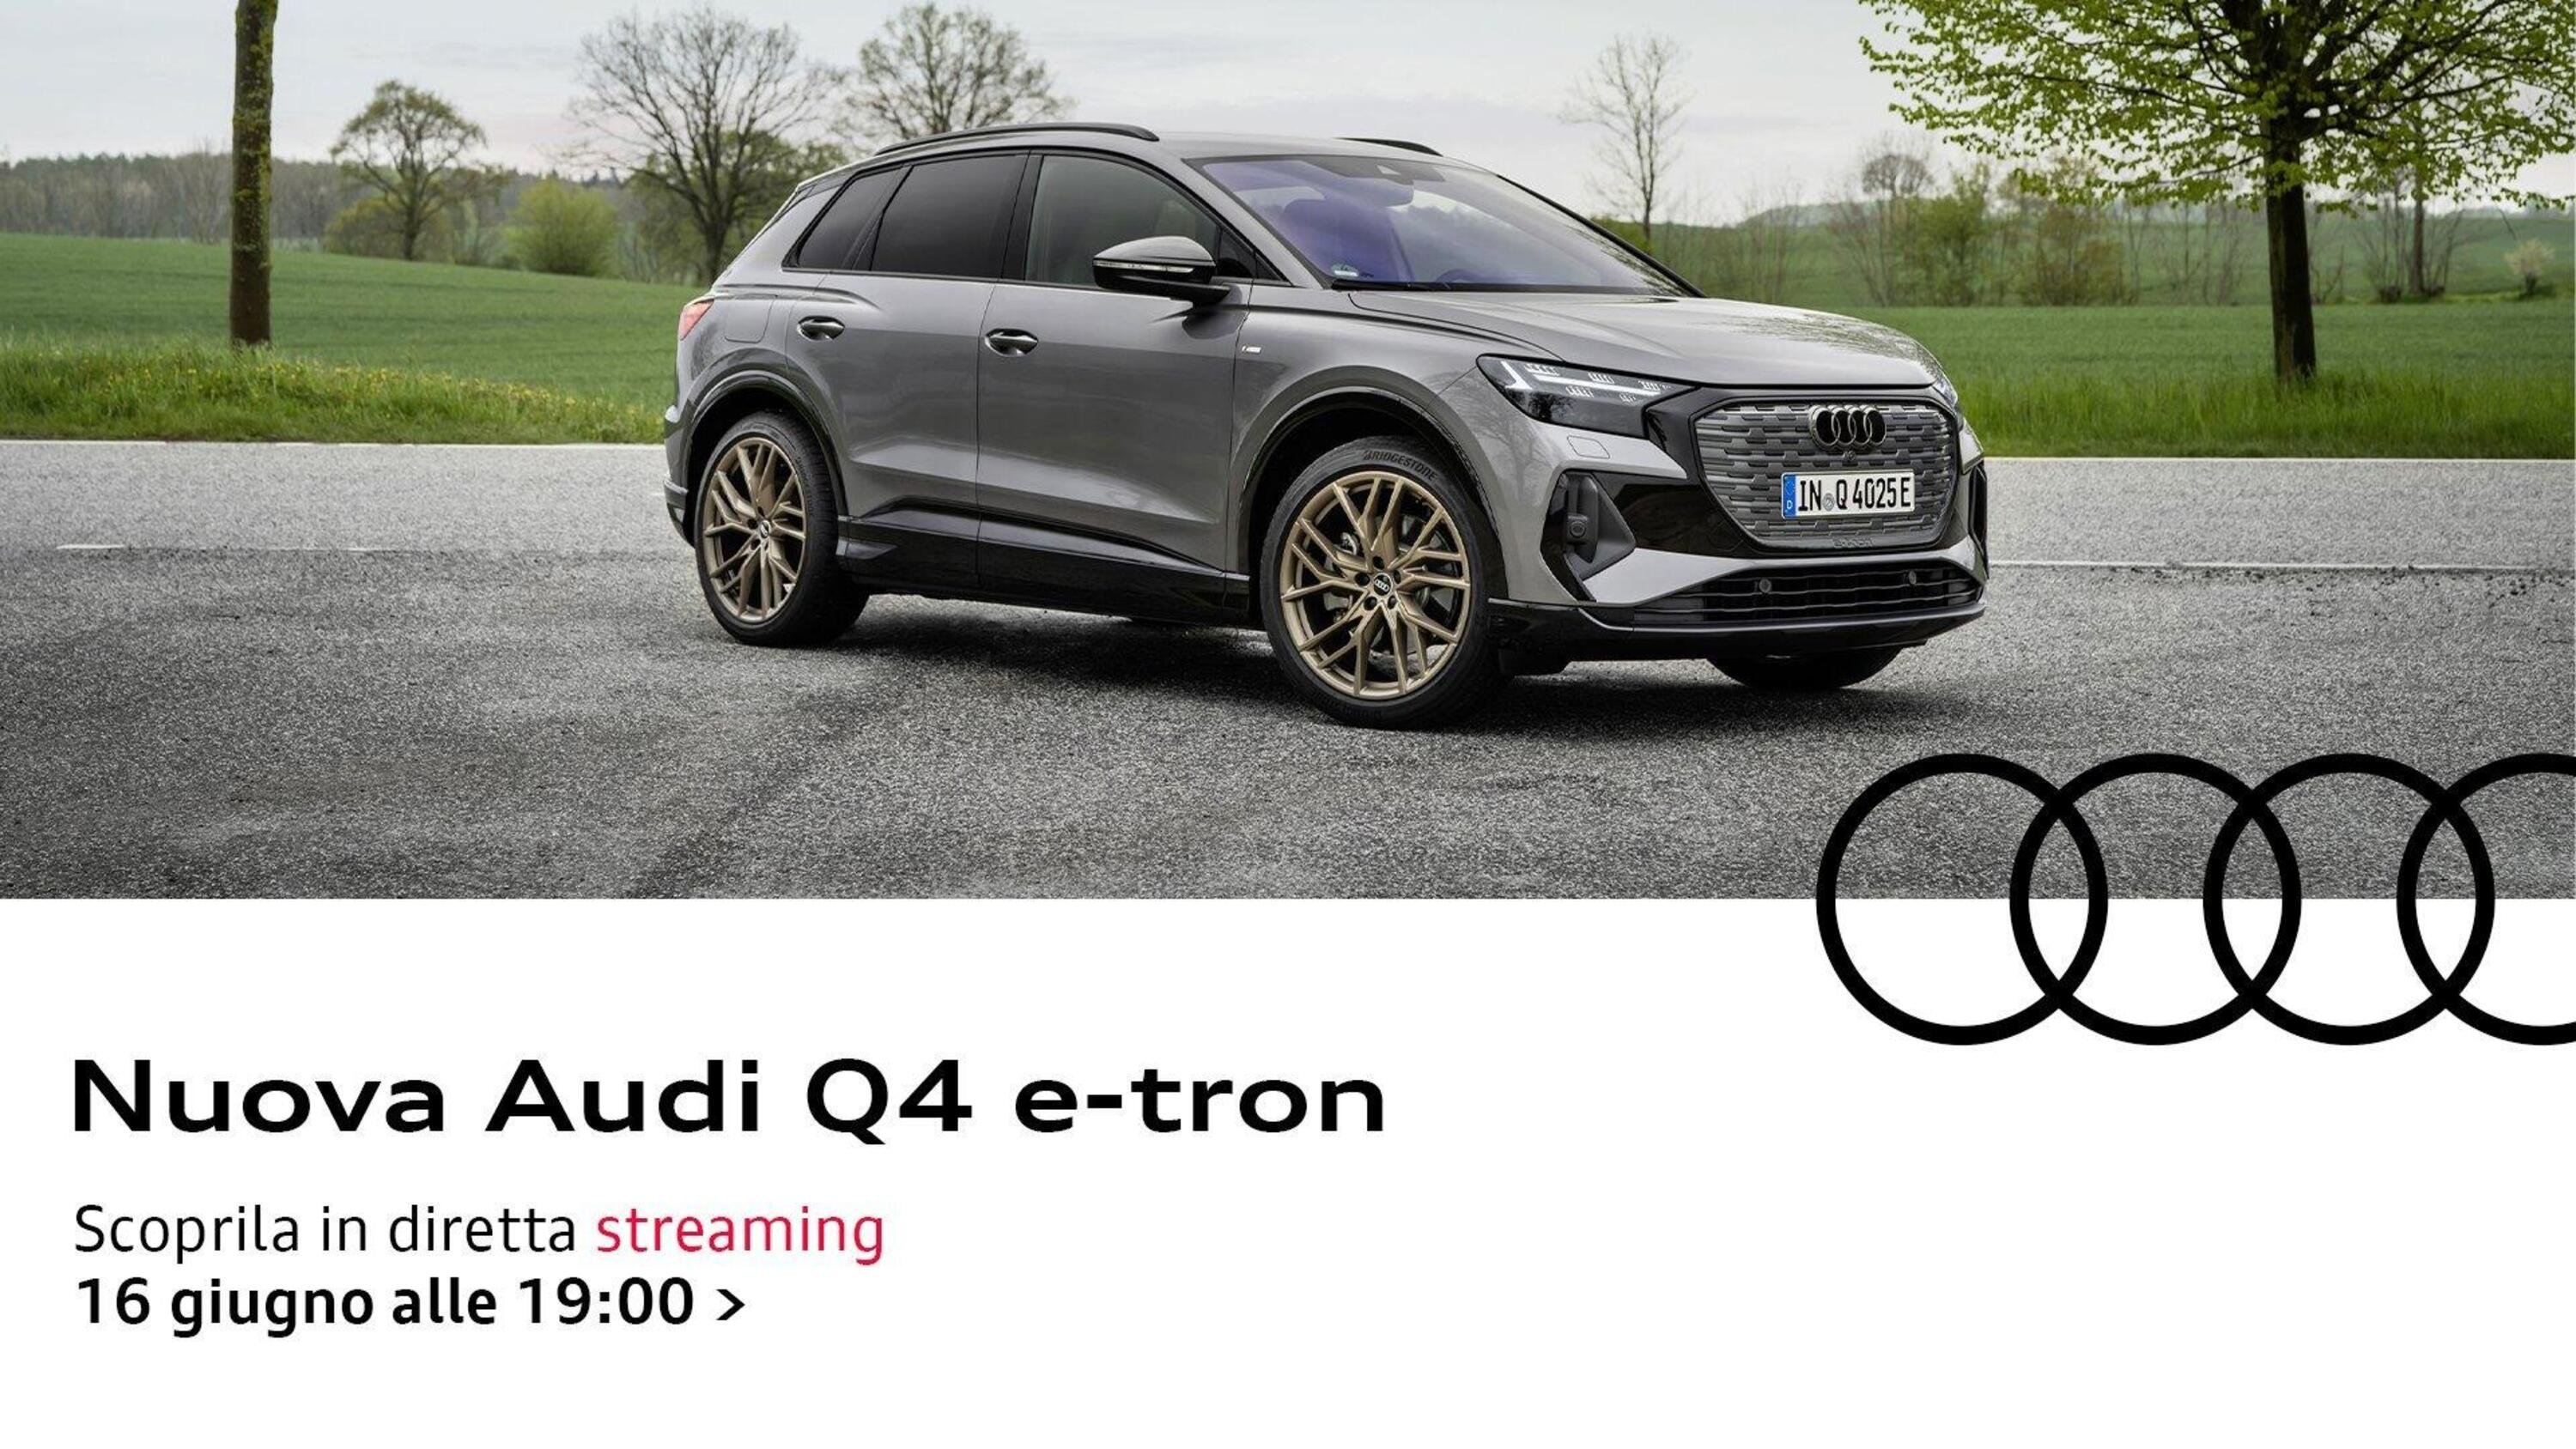 Alla scoperta della nuova Audi Q4 e-tron, Da Sagam: analisi e test drive in diretta con Masterpilot